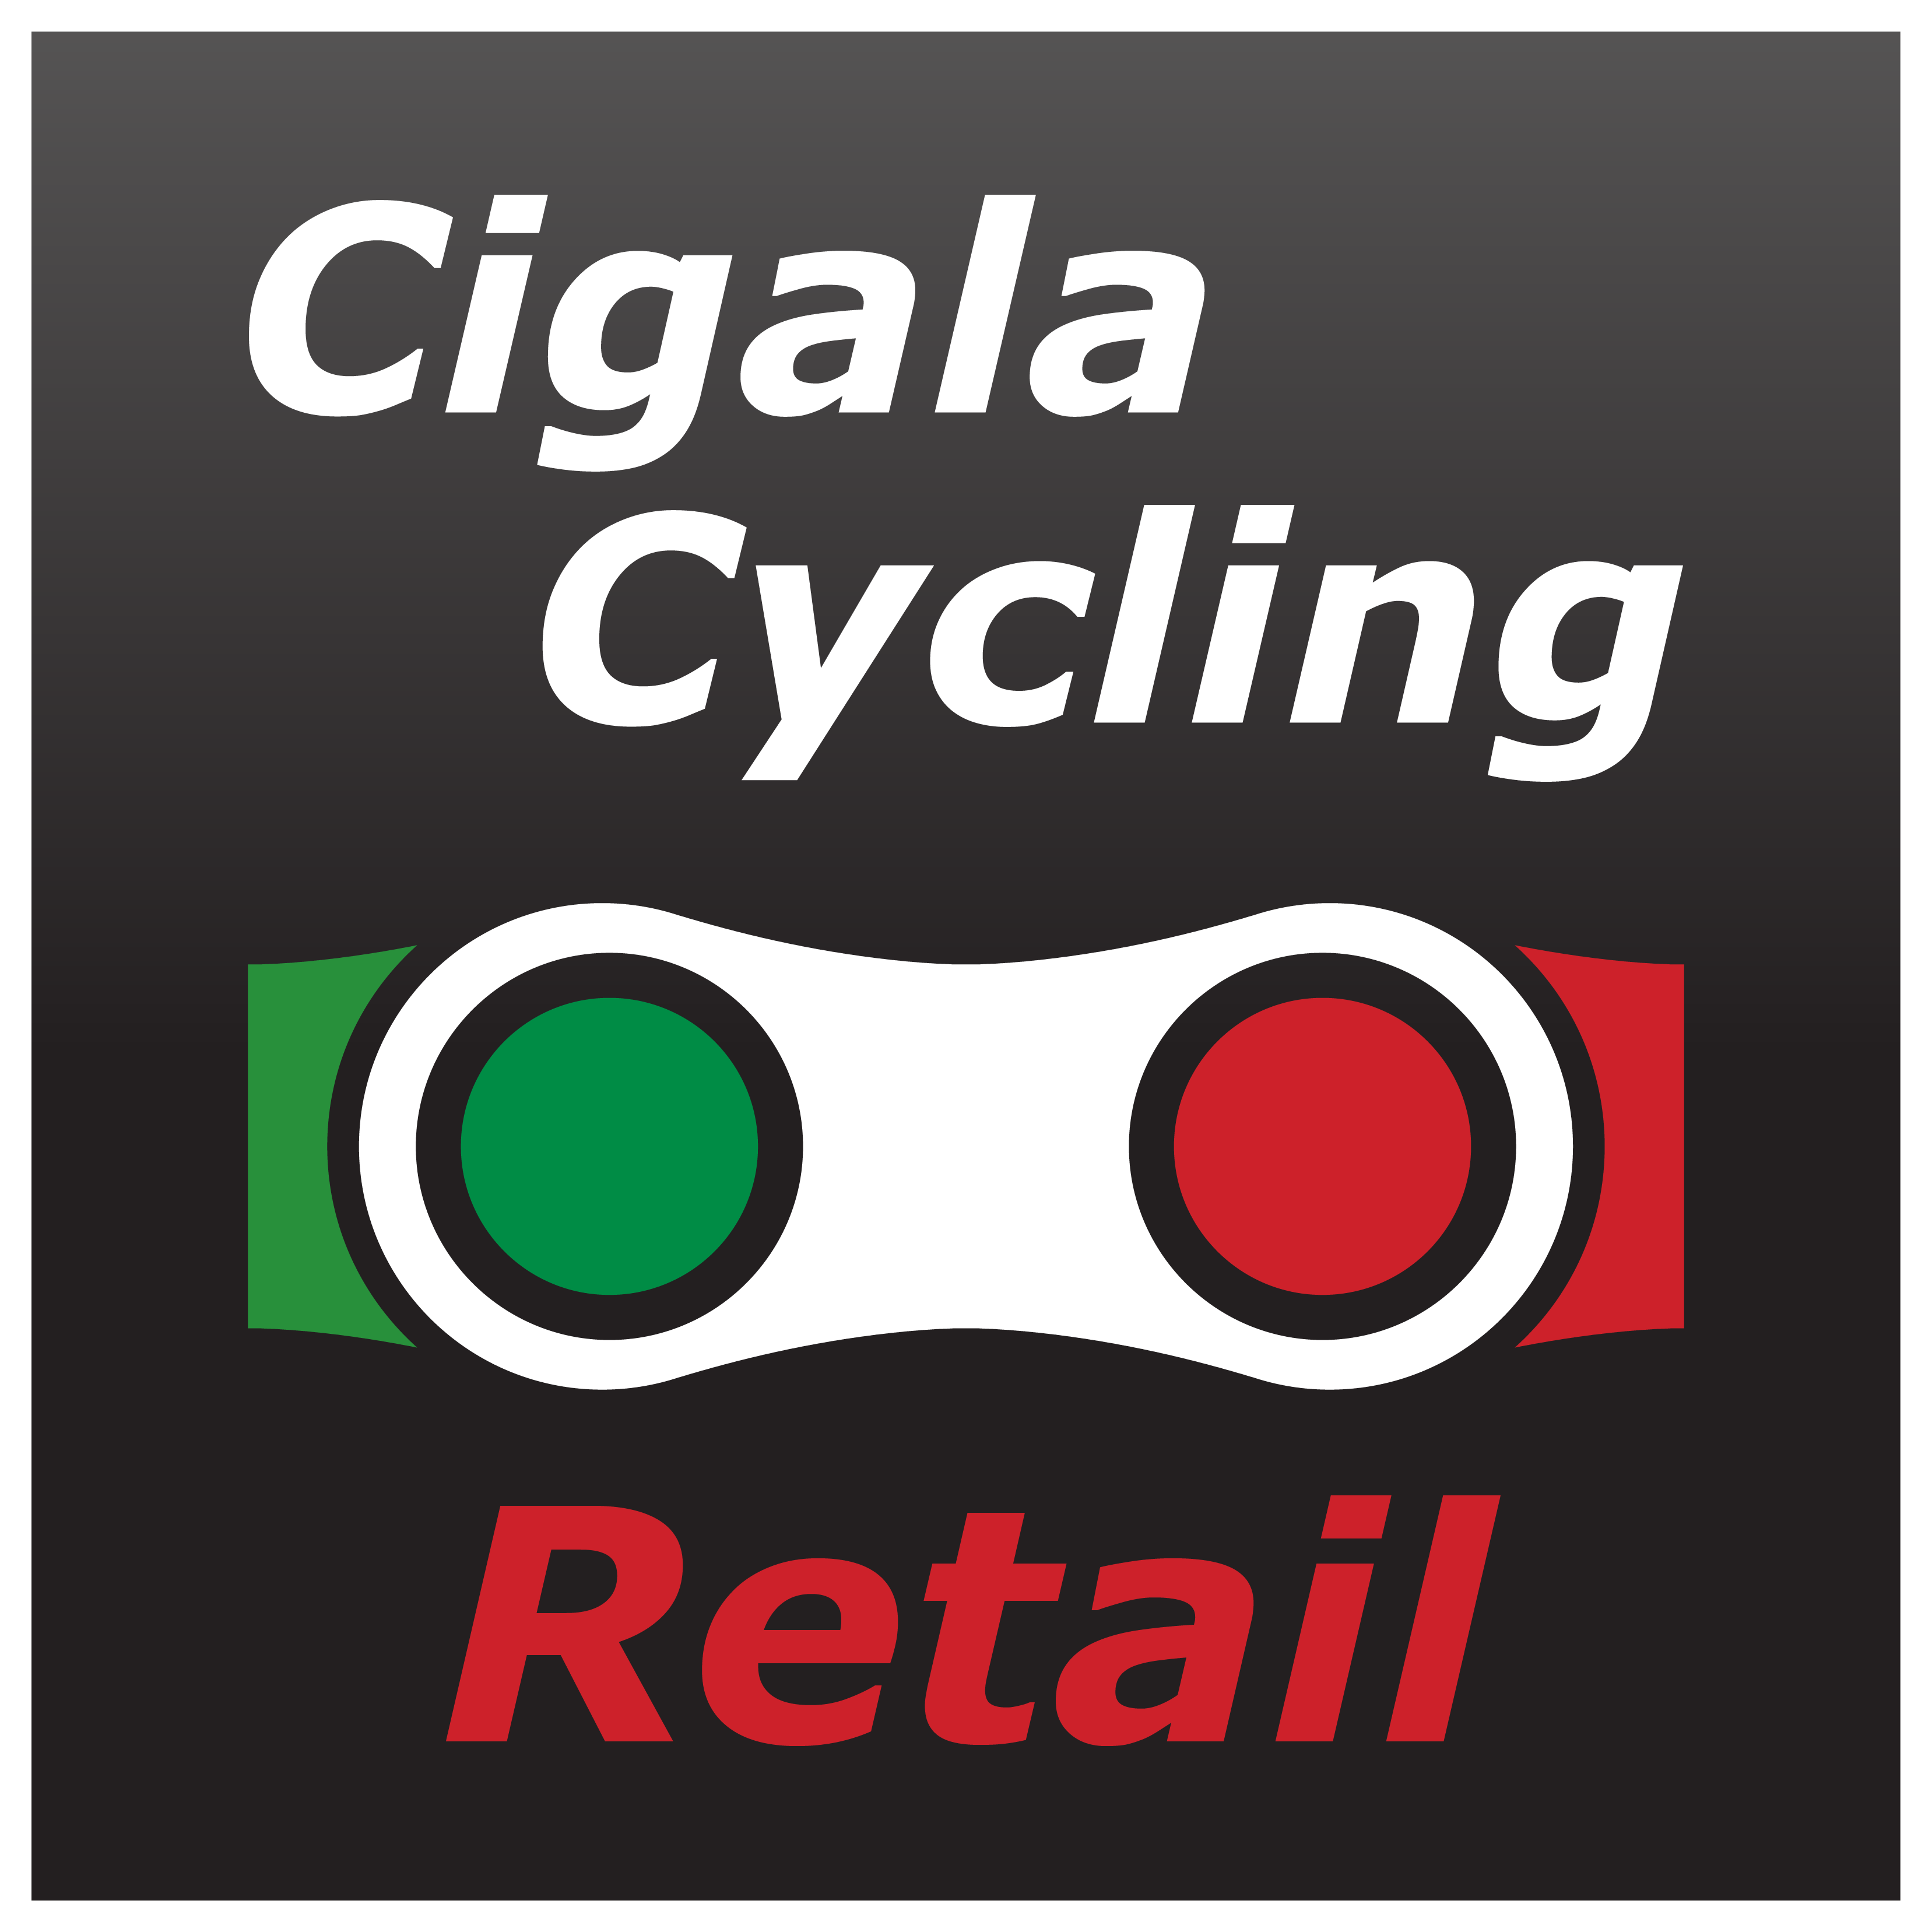 https://cigalacycling.co.uk/cdn/shop/files/CigalaCycling2020RETAIL_3314x.png?v=1614312733